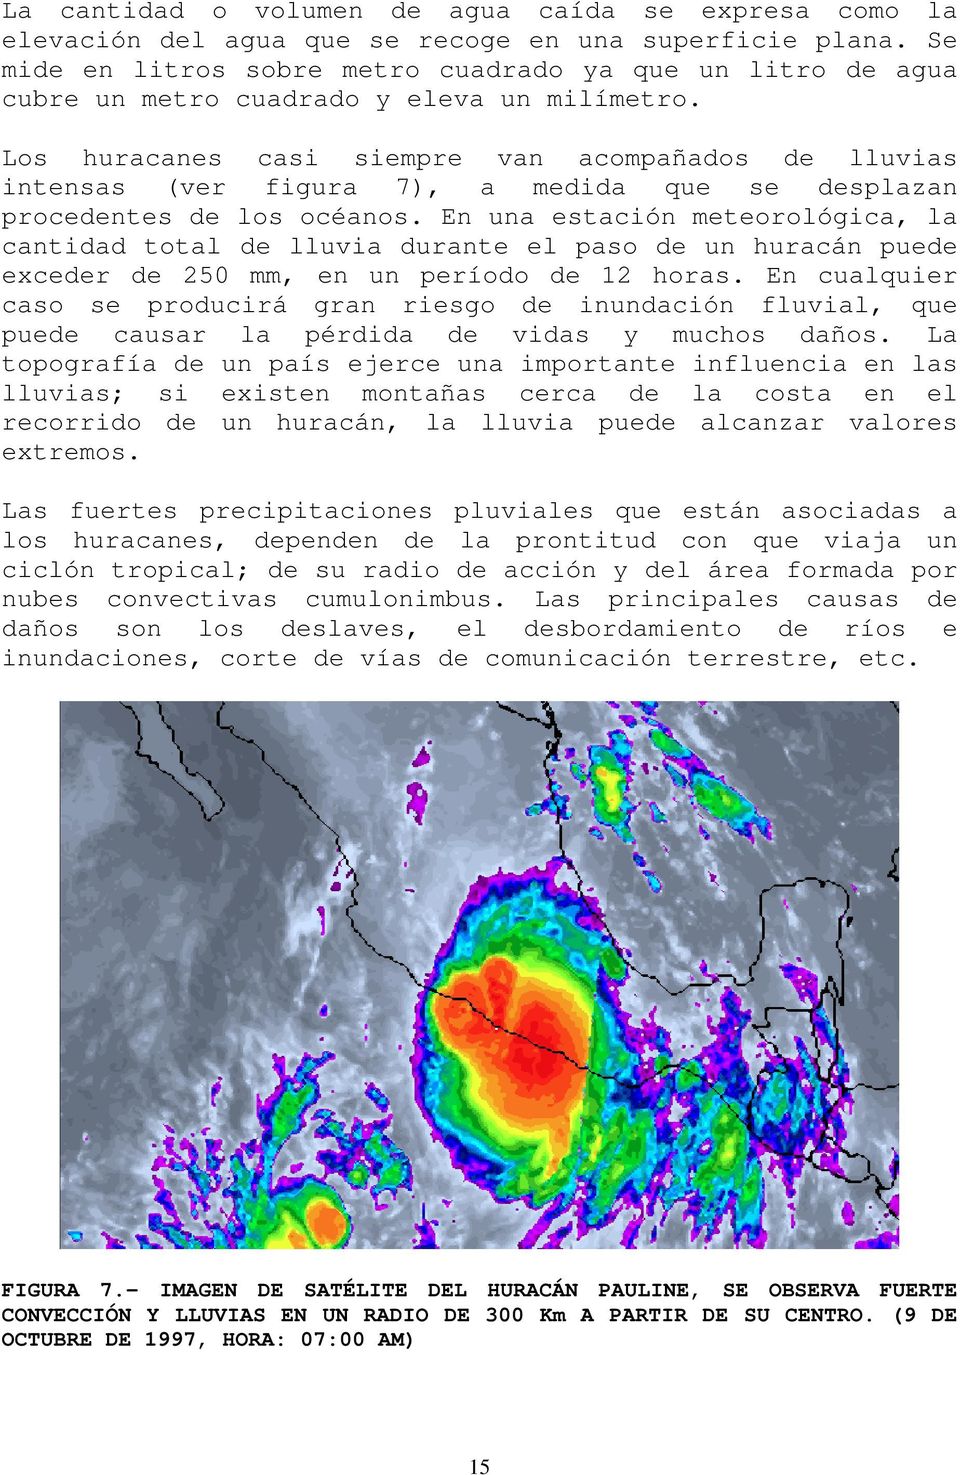 Los huracanes casi siempre van acompañados de lluvias intensas (ver figura 7), a medida que se desplazan procedentes de los océanos.